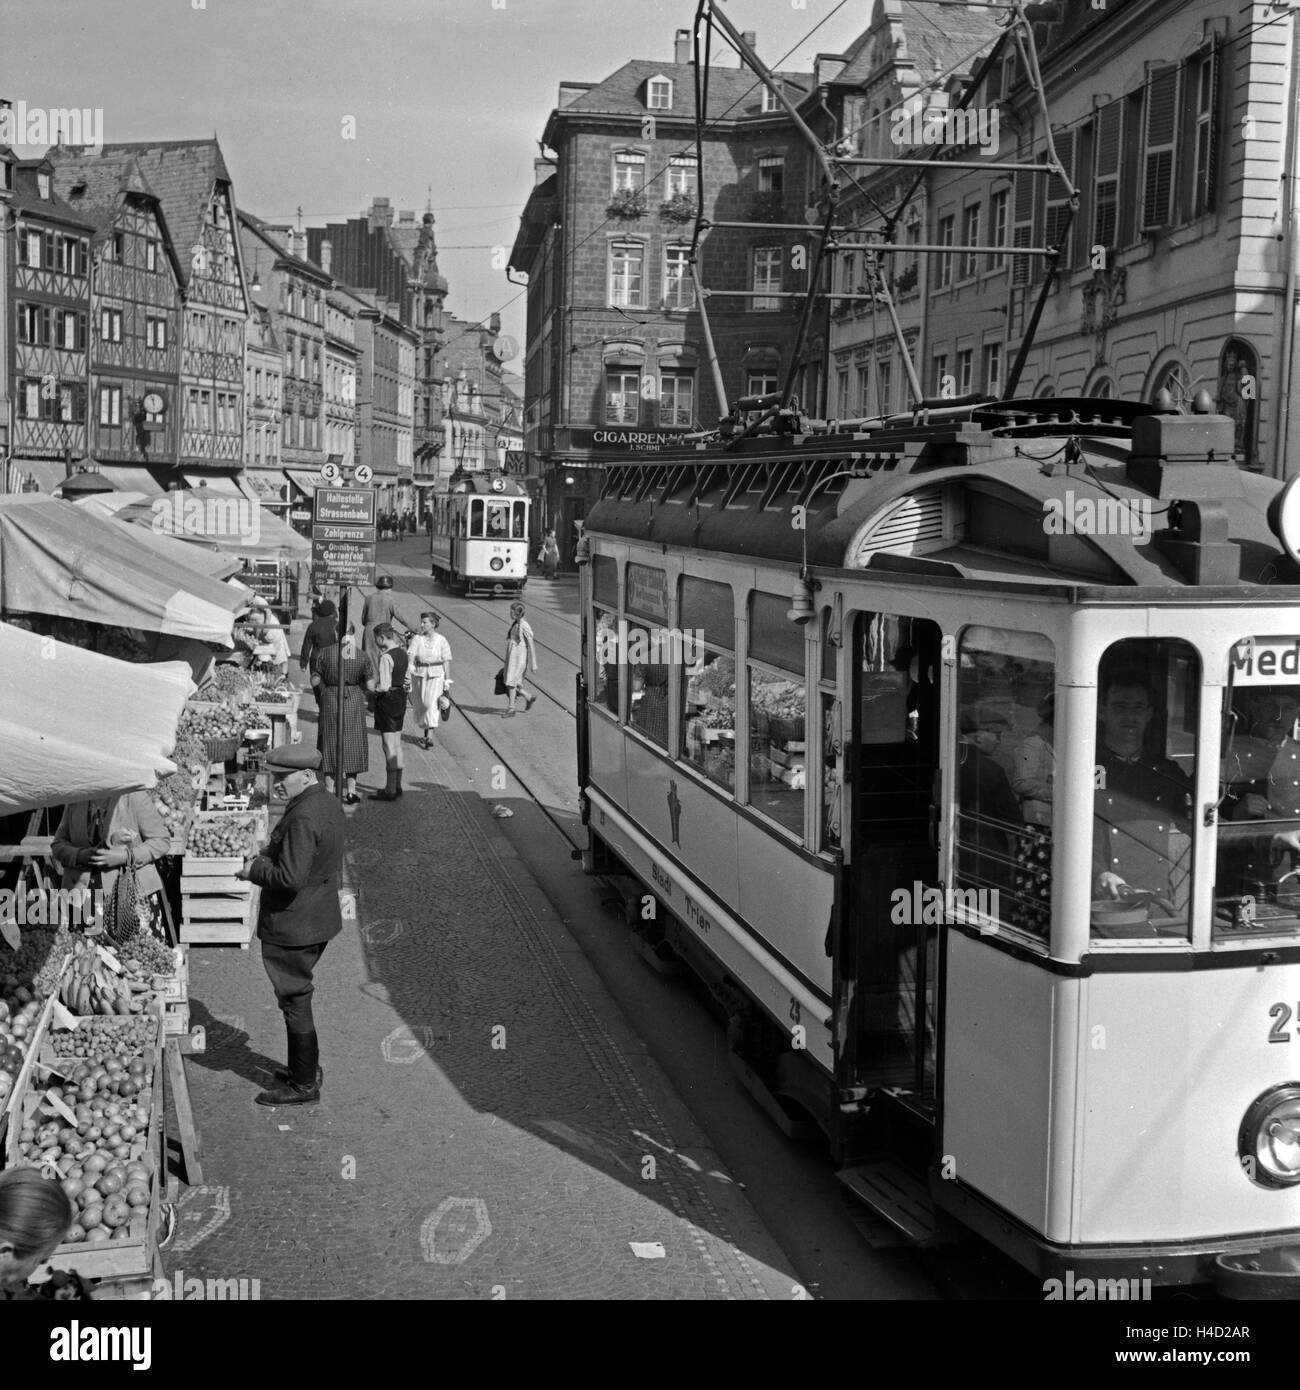 Straßenbahnen der Linien 3 und 4 auf dem Marktplatz in Trier, Deutschland 1930er Jahre. Trams of the lines 3 and 4 at the main market of Trier, Germany 1930s. Stock Photo